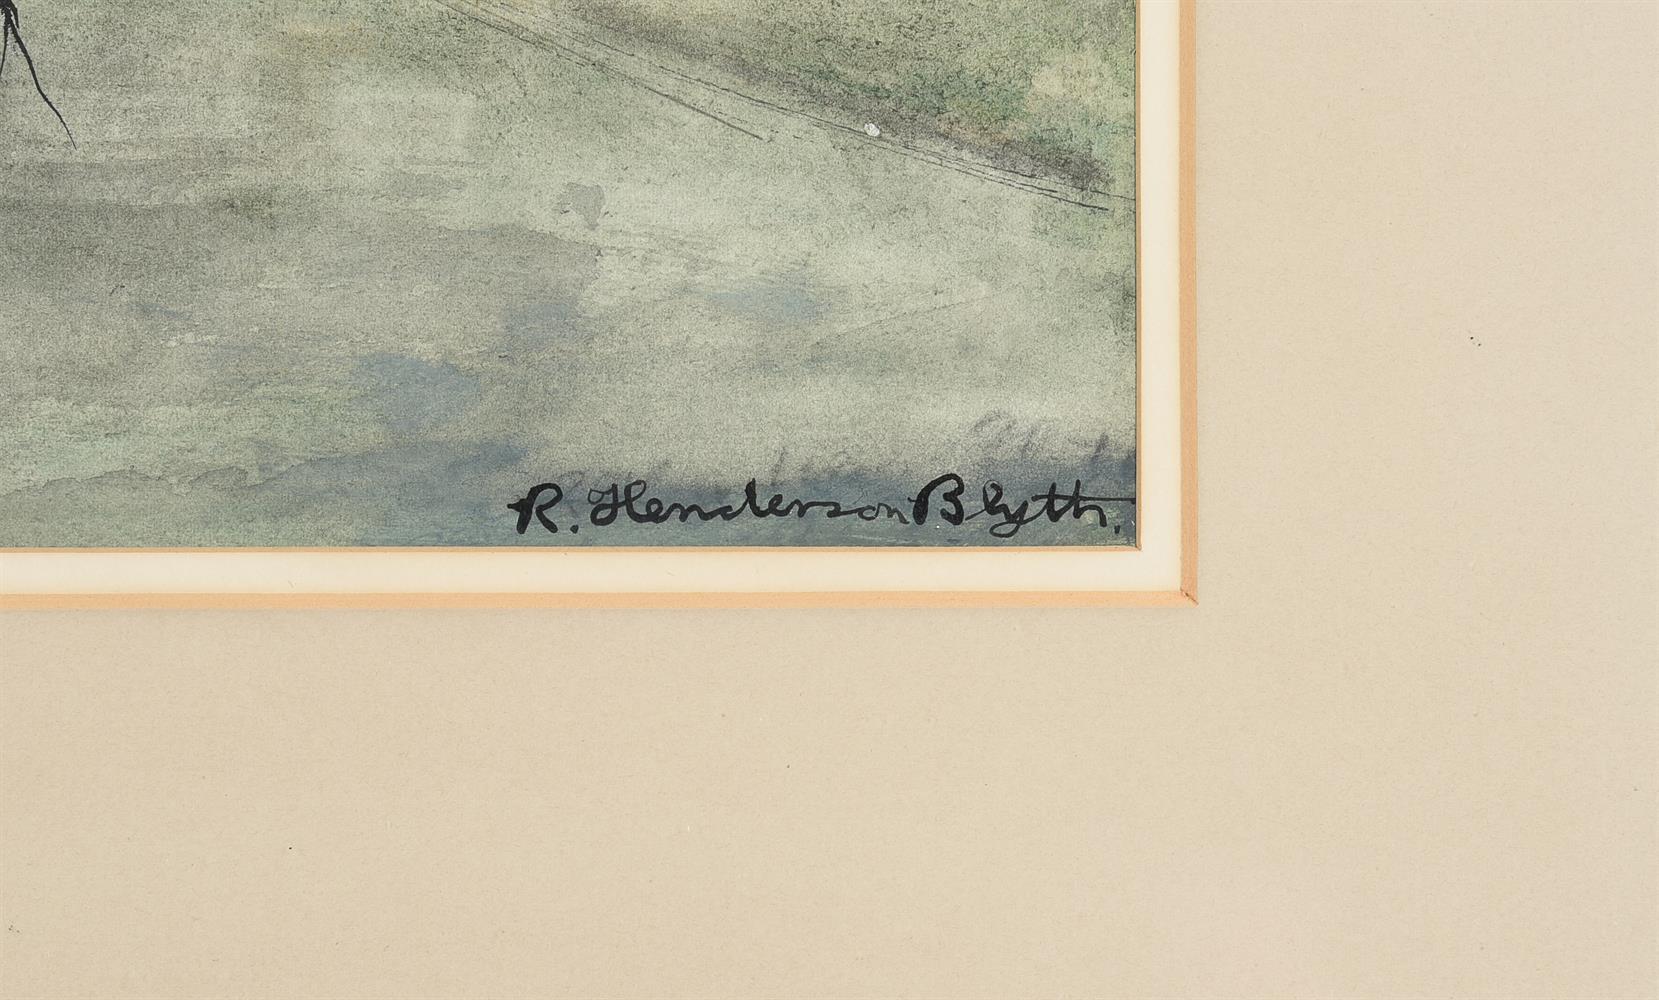 λ ROBERT HENDERSON BLYTH (BRITISH 1919-1970), VARIETY OF TREES - Image 3 of 4